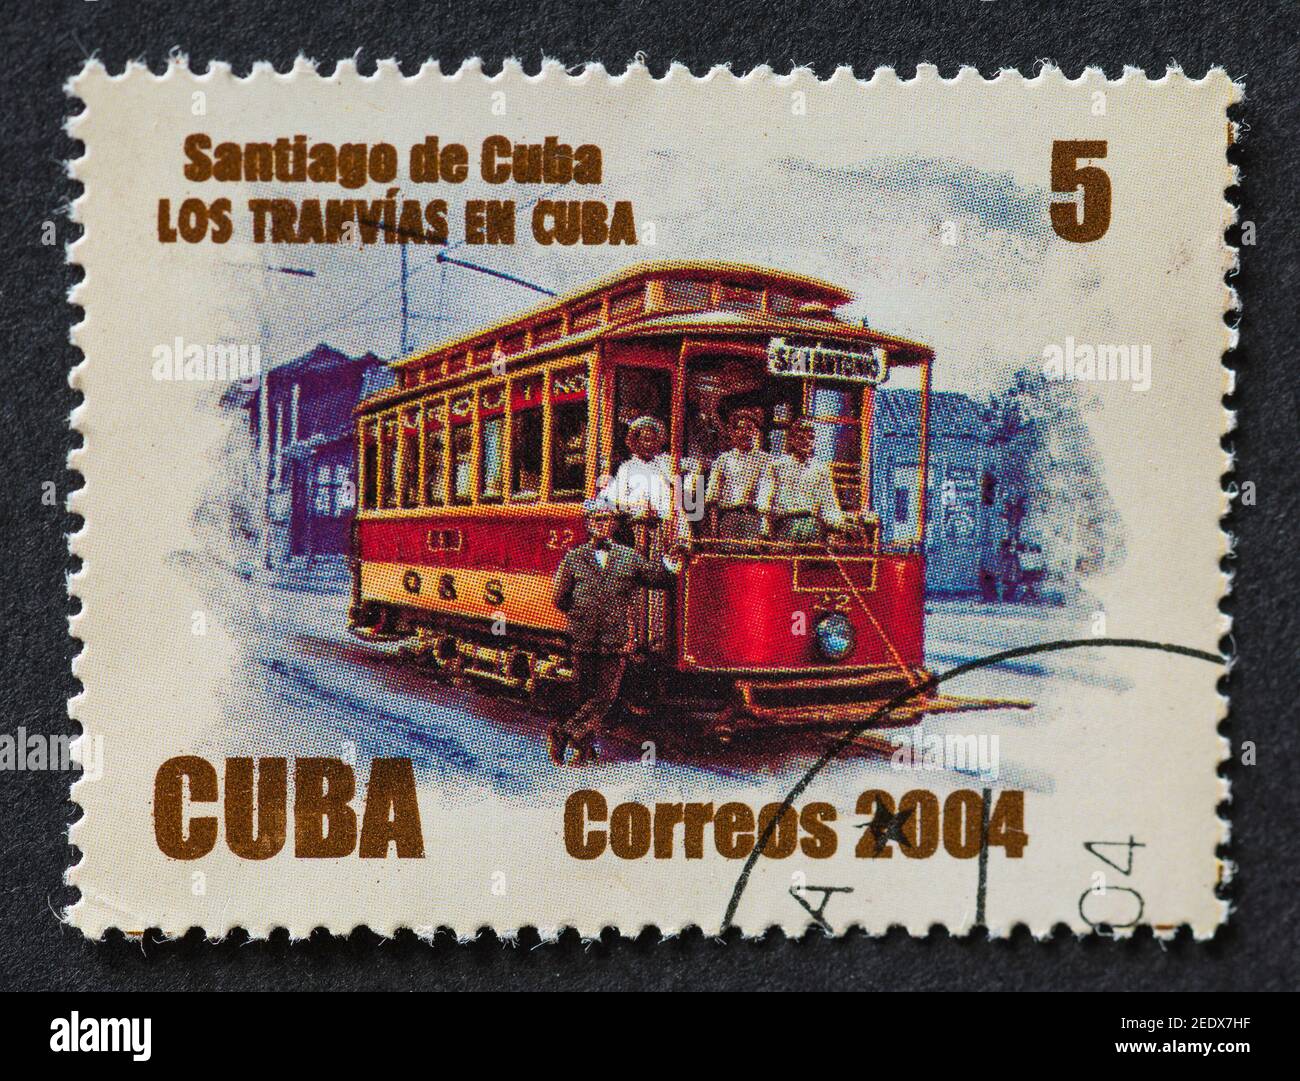 Sellos postales cubanos antiguos Foto de stock